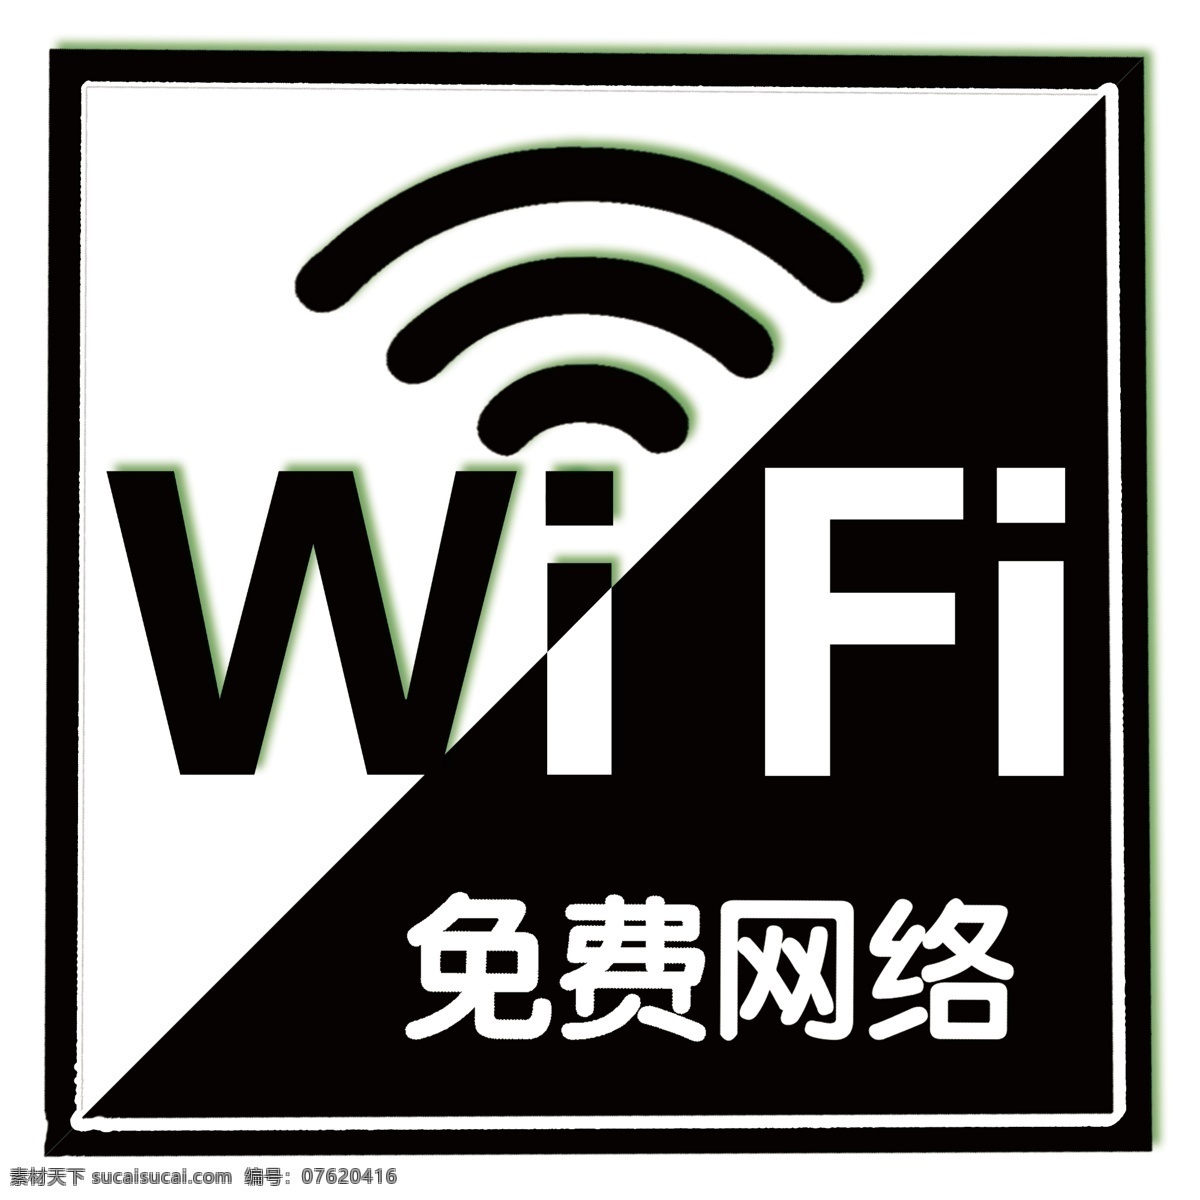 wifi标识 免费wifi wifi 免费 免费上网 信号 小图标 标识标志图标 免费网络 黑白标识 标识 分层